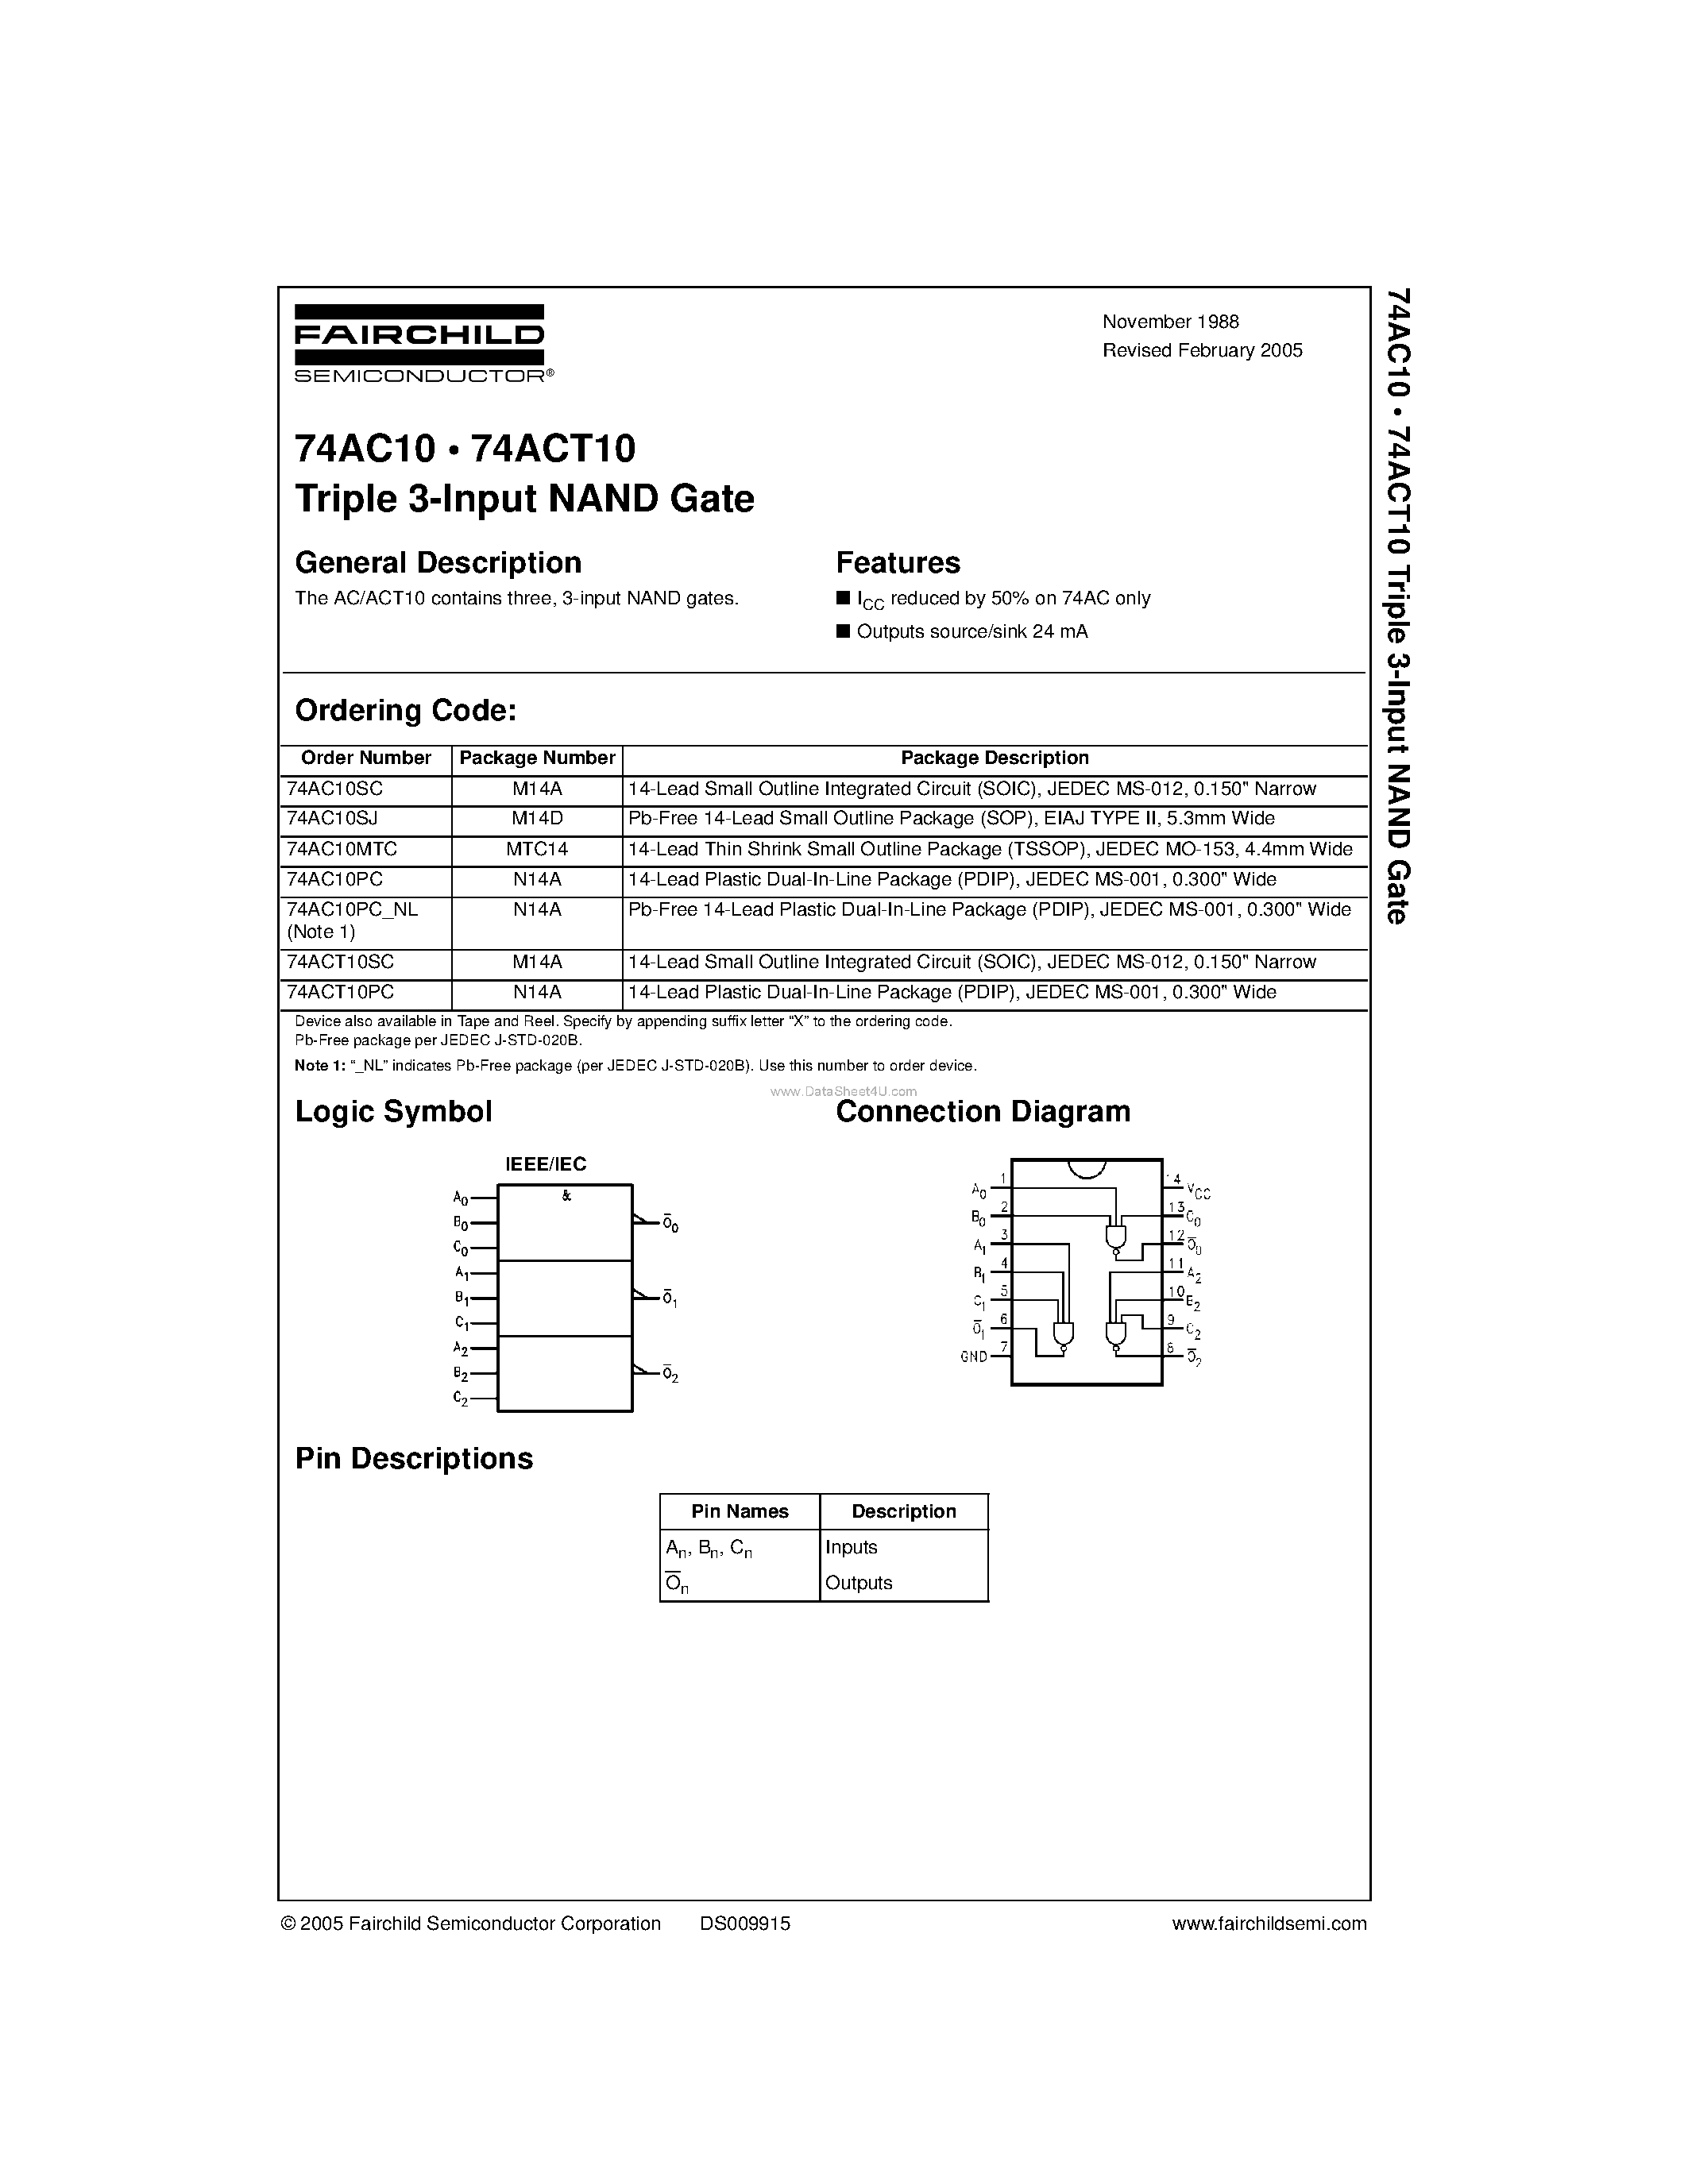 Datasheet 74AC10 - Triple 3-Input NAND Gate page 1